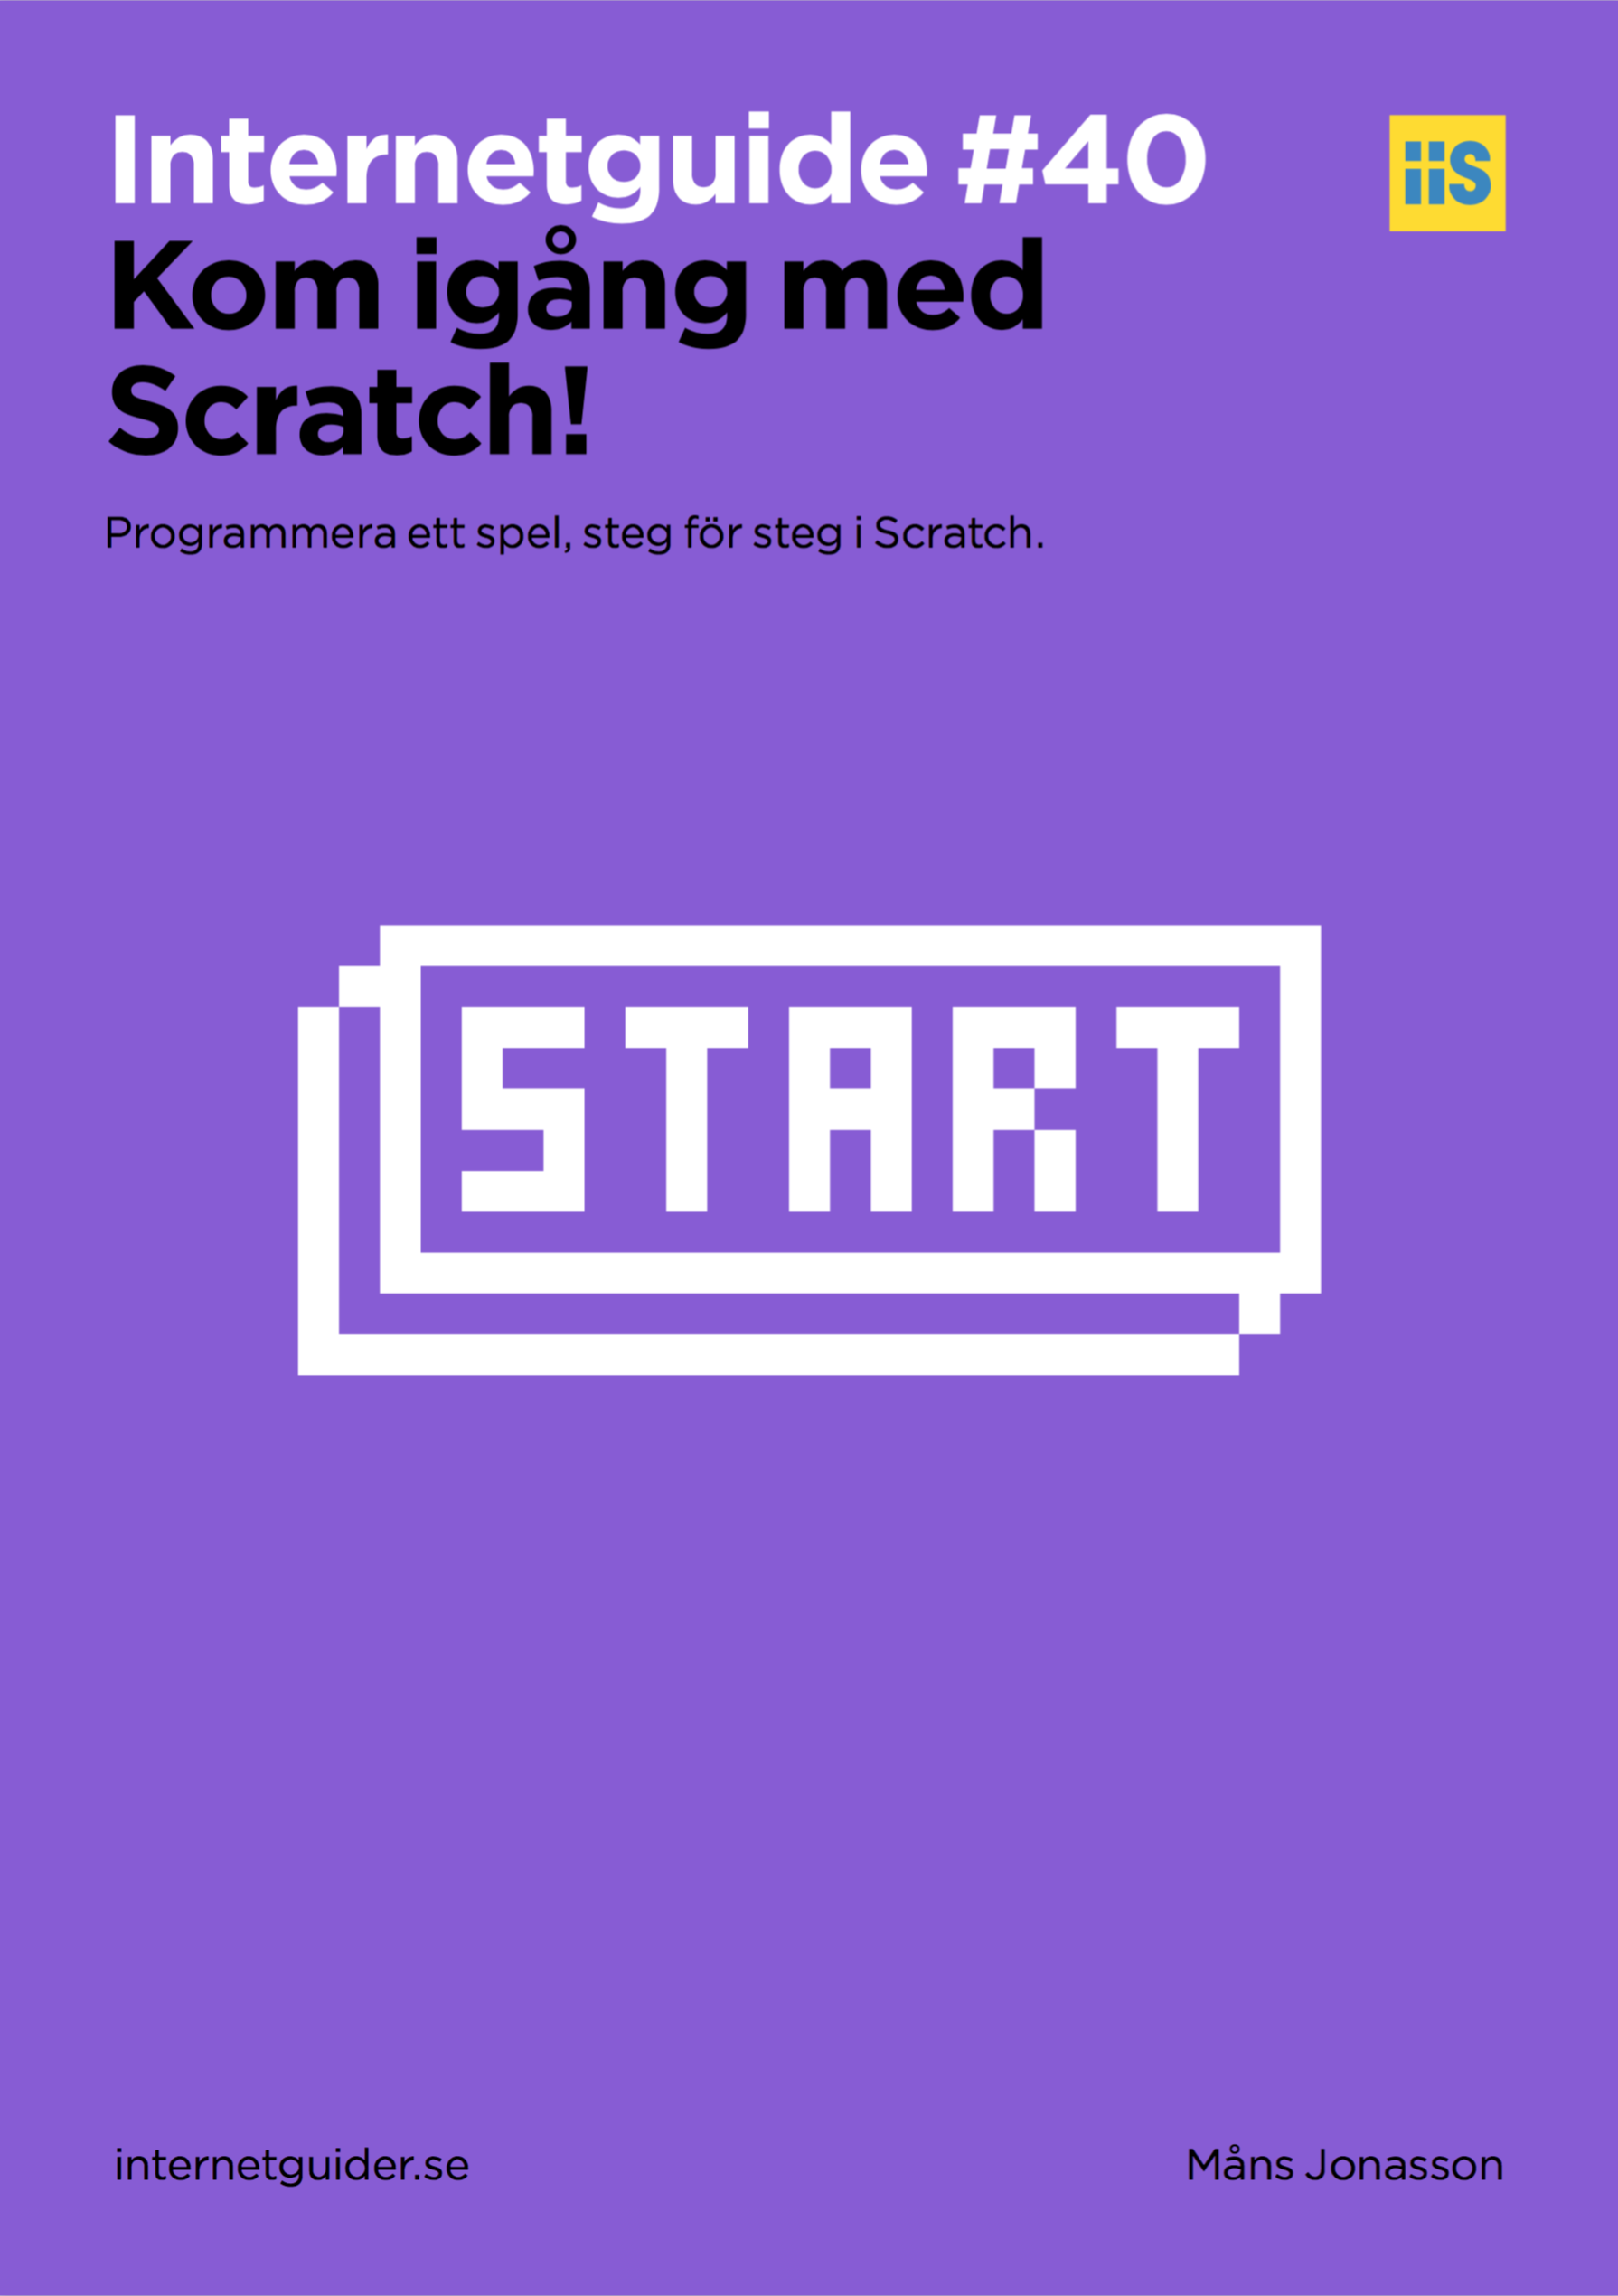 Kom igång med Scratch